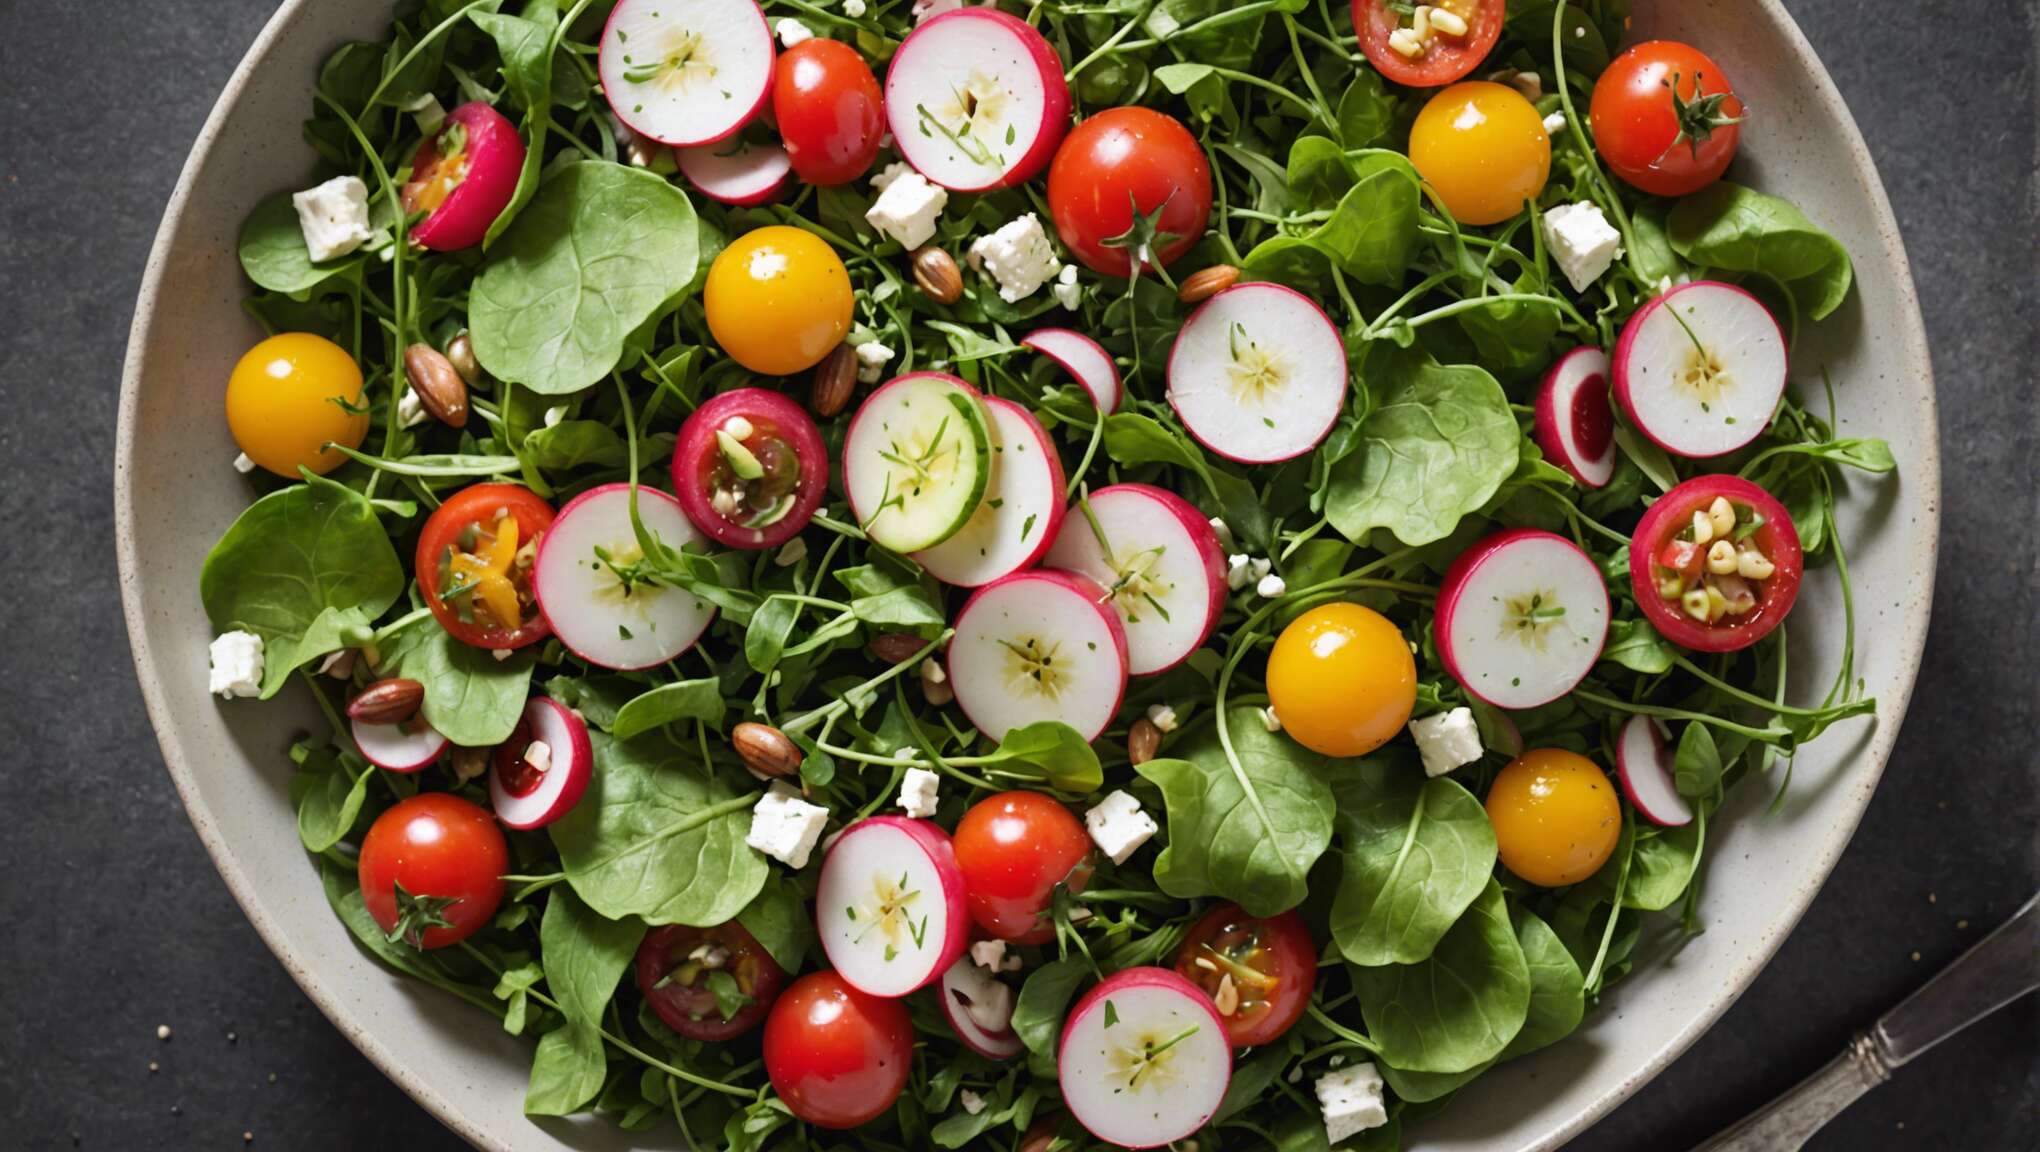 Combiner légumes de saison pour une salade savoureuse